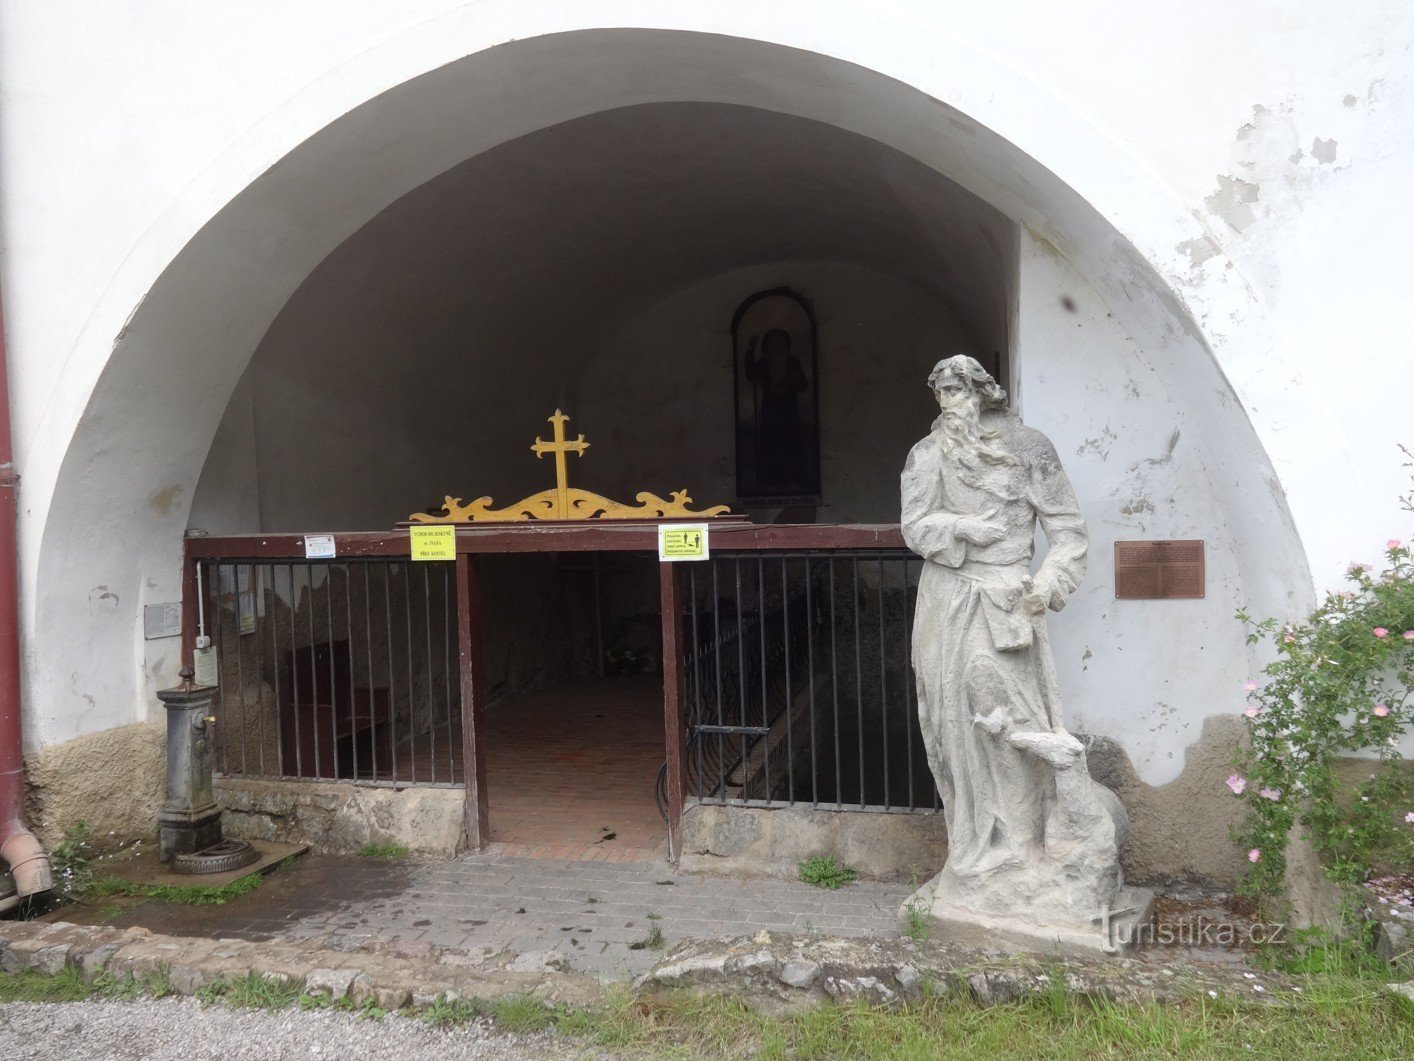 St. Jan pod Skalou et le puits de St. Ivan près de l'église de la Nativité de St. Jean le Baptiste